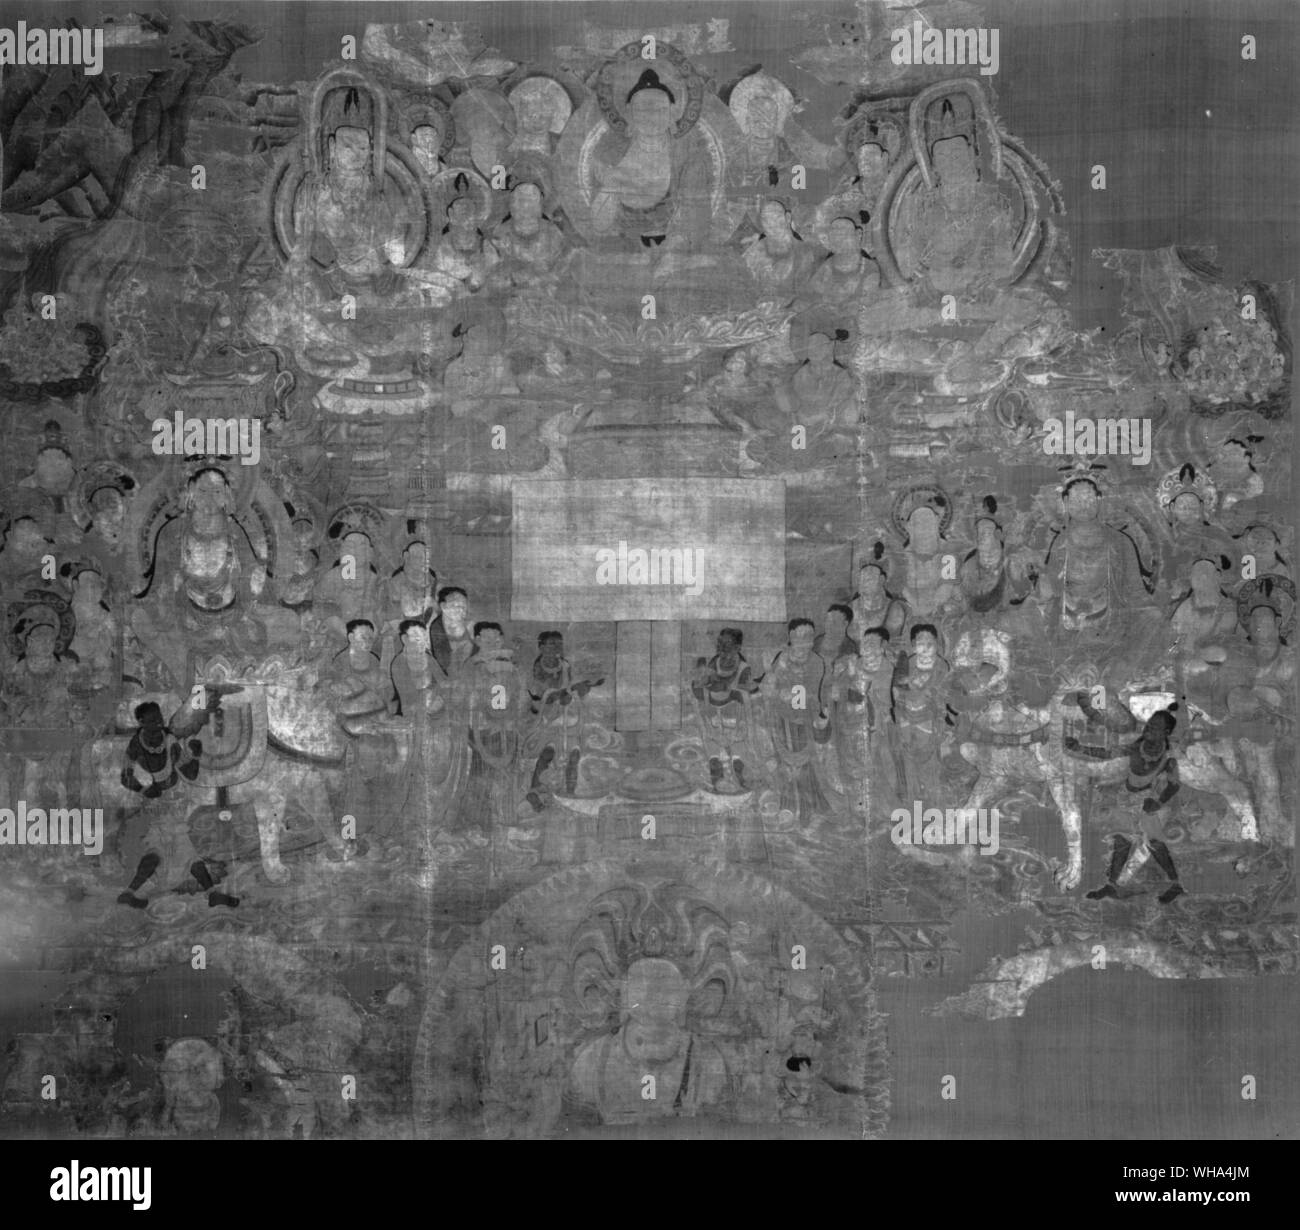 Partie d'une peinture sur soie trouvé à Tun Huang représentant le paradis bouddhiste Banque D'Images